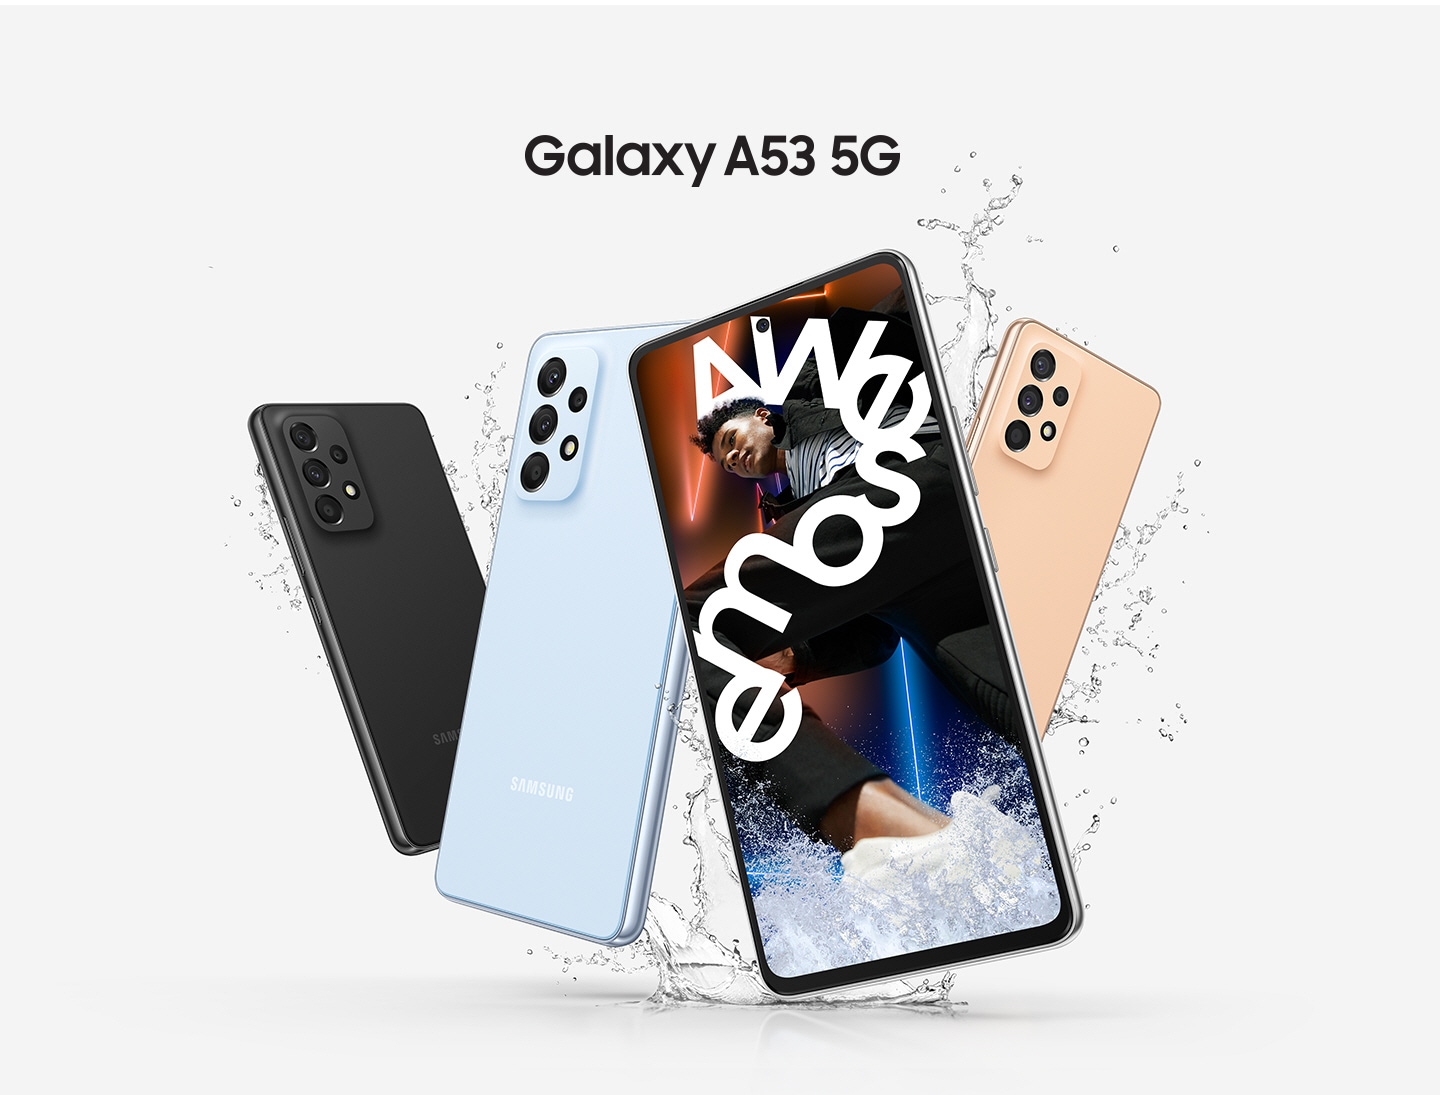 Vier Galaxy A53 5G-Smartphones werden gezeigt, wobei drei von ihnen die Rückseite zeigen, um die Farbvarianten Awesome Black, Awesome Blue und Awesome Peach darzustellen, und ein einzelnes Galaxy A53 5G auf der Vorderseite zeigt ein lebhaftes Bild eines Mannes, der in weißen Text mit der Aufschrift Awesome eingewickelt ist. 